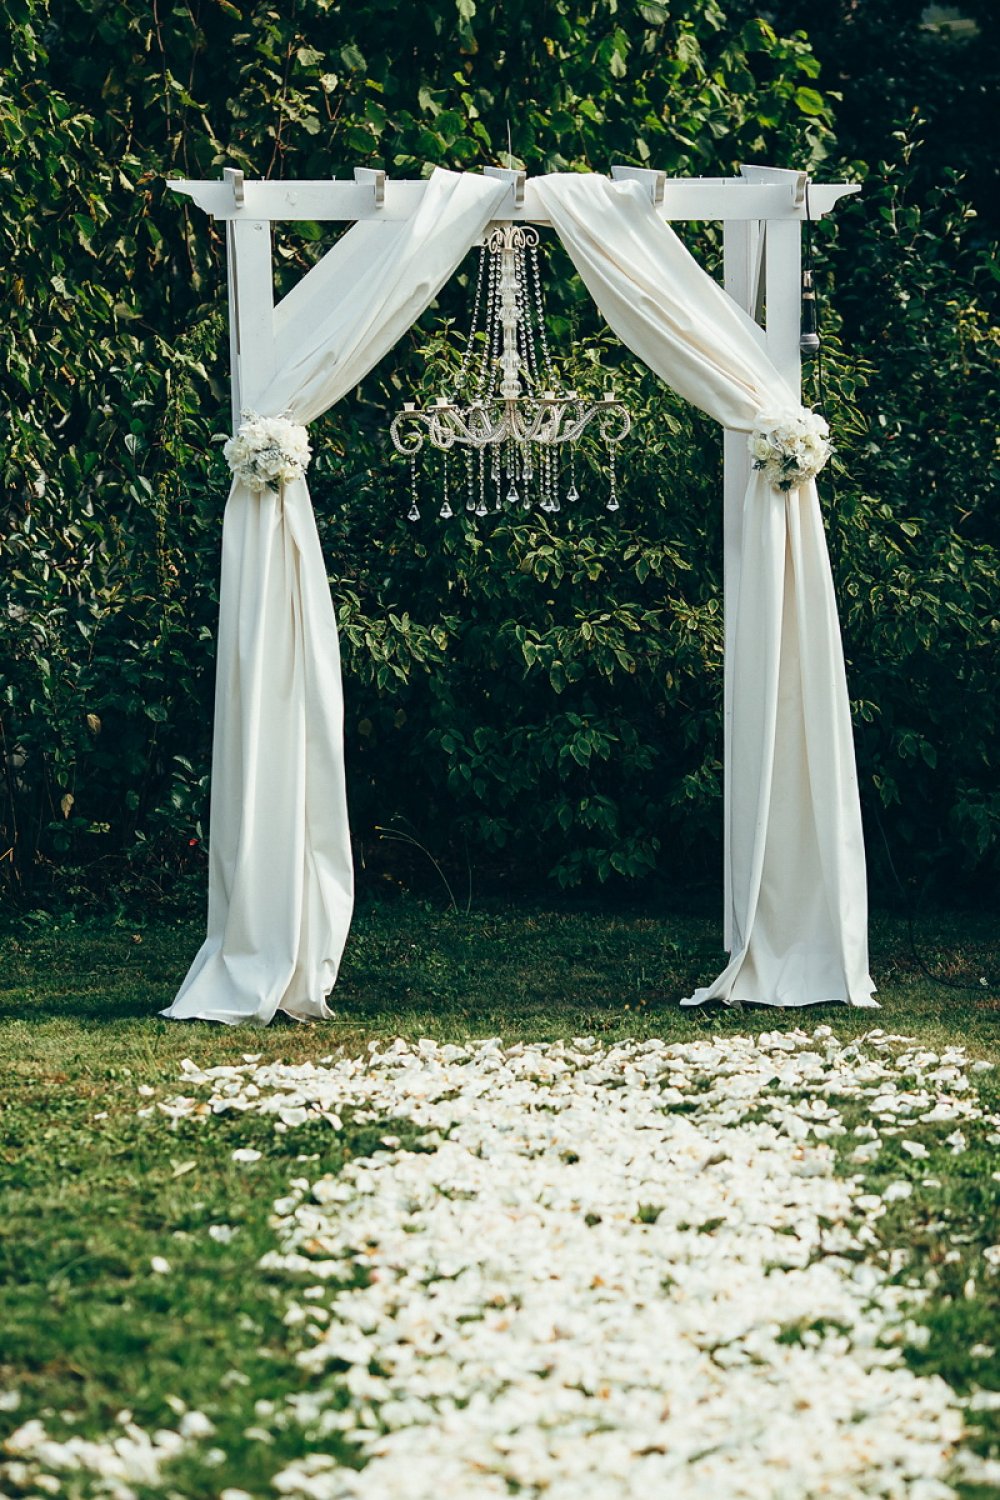 Объемная арка украшена элегантной люстрой и драпировками из плотной ткани.